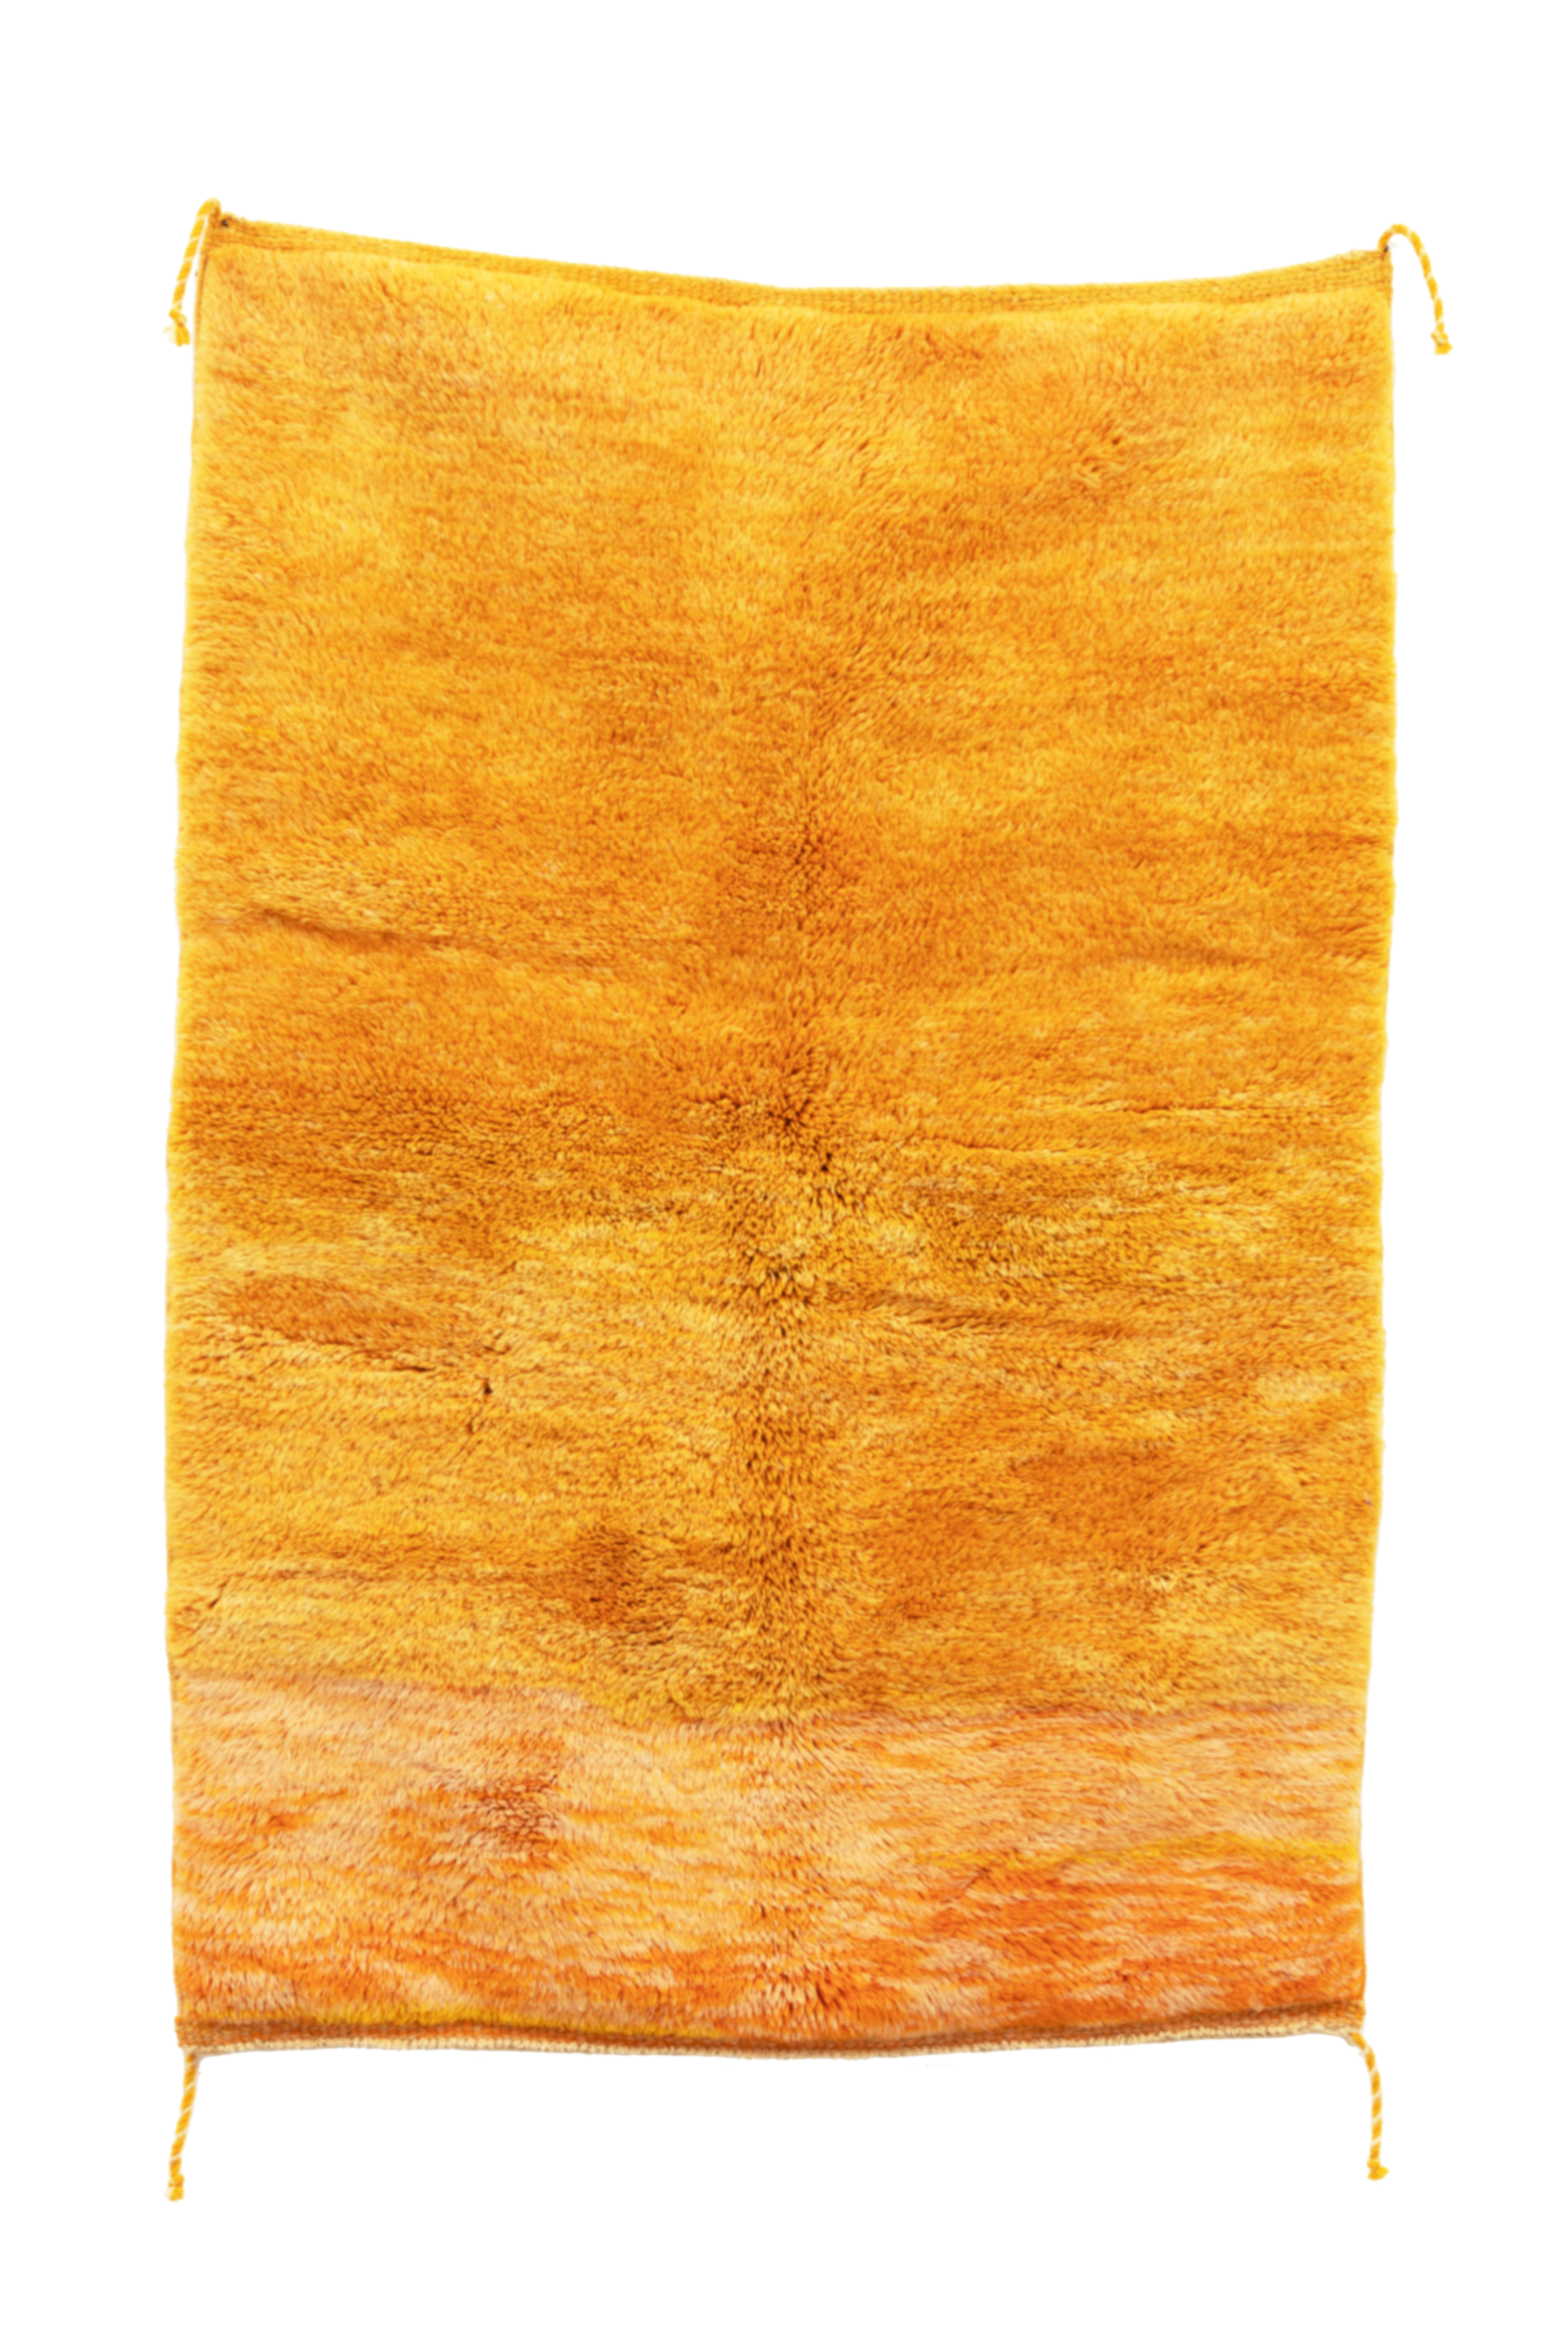 FINT gelb  Berber Teppiche nach Maß   